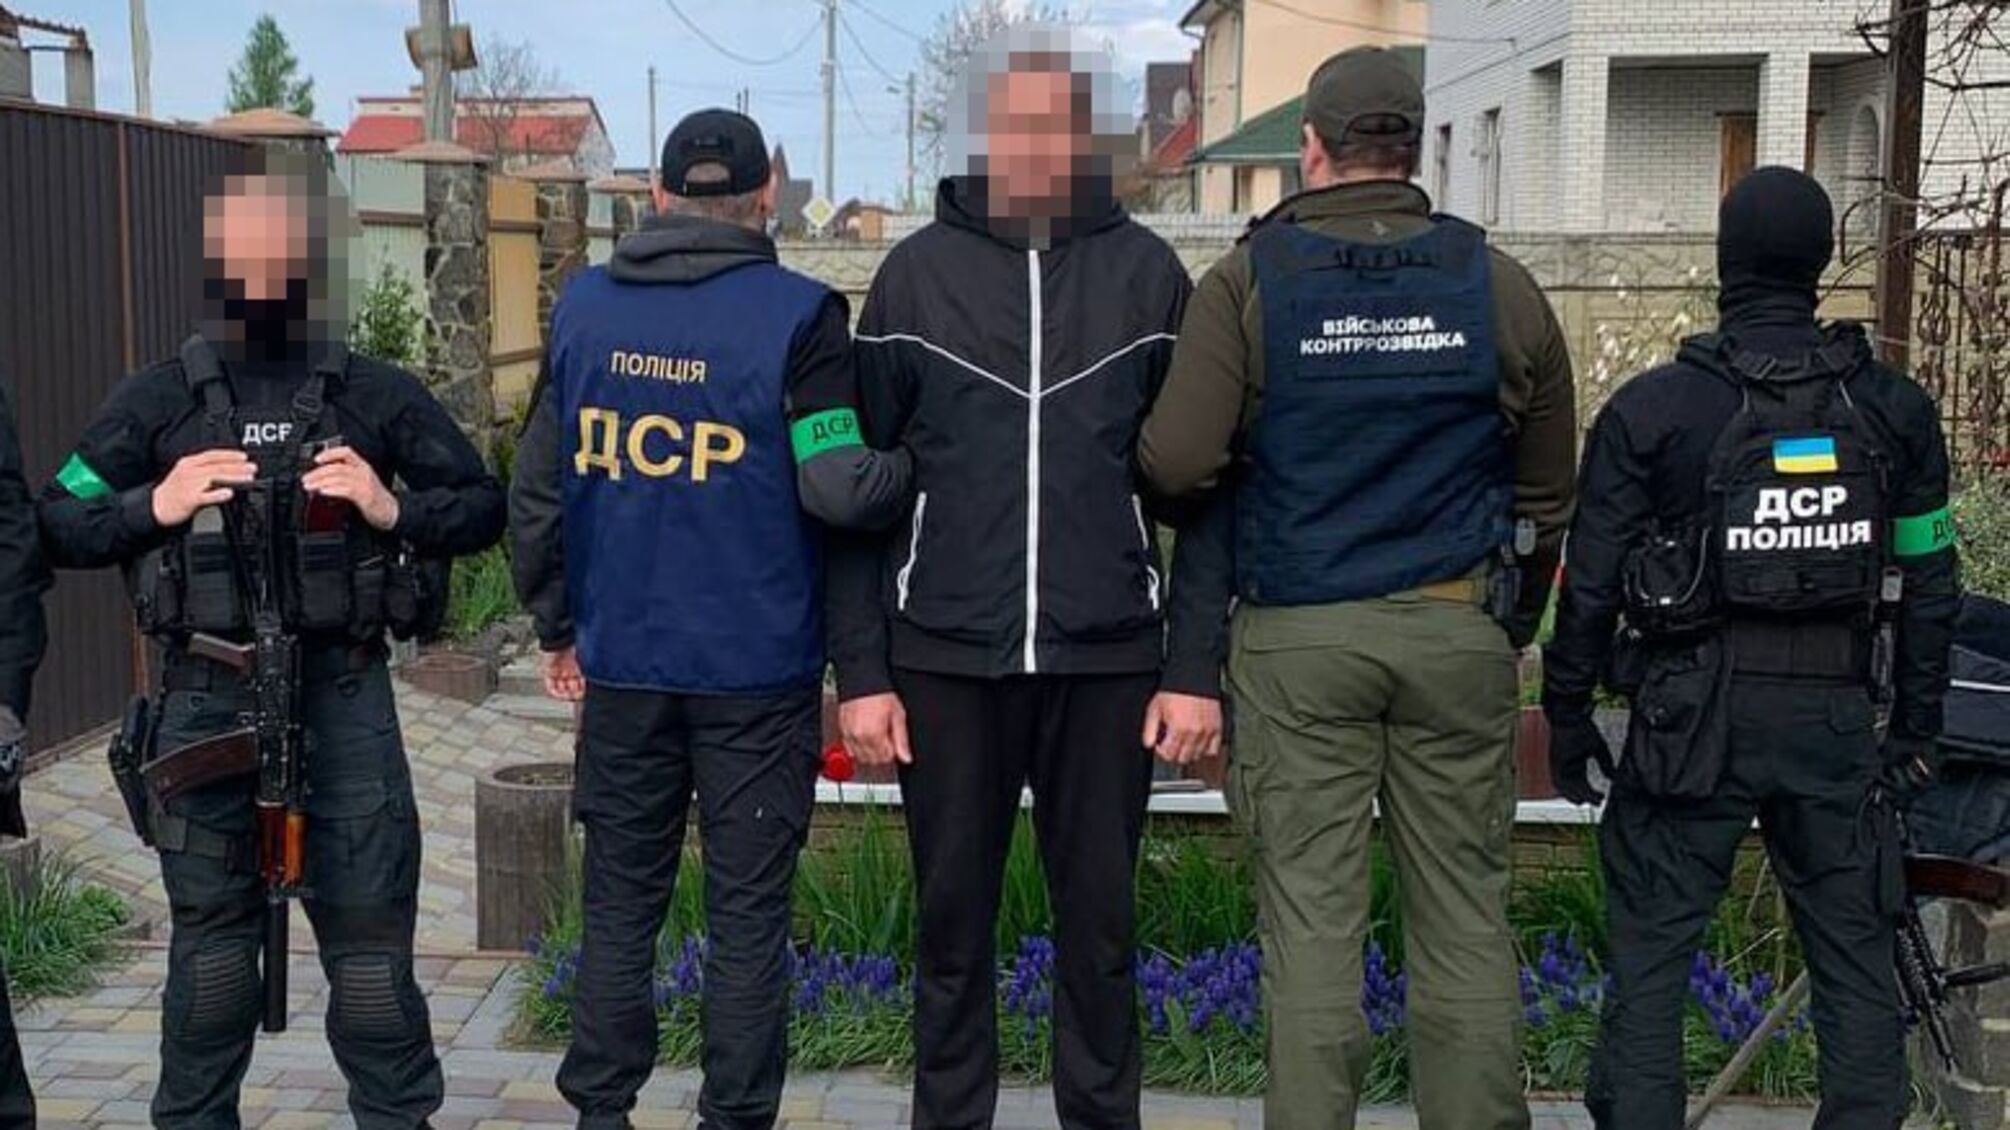 'Зливав' дані про учасників АТО росіянам: житель Київщини проведе 10 років за ґратами